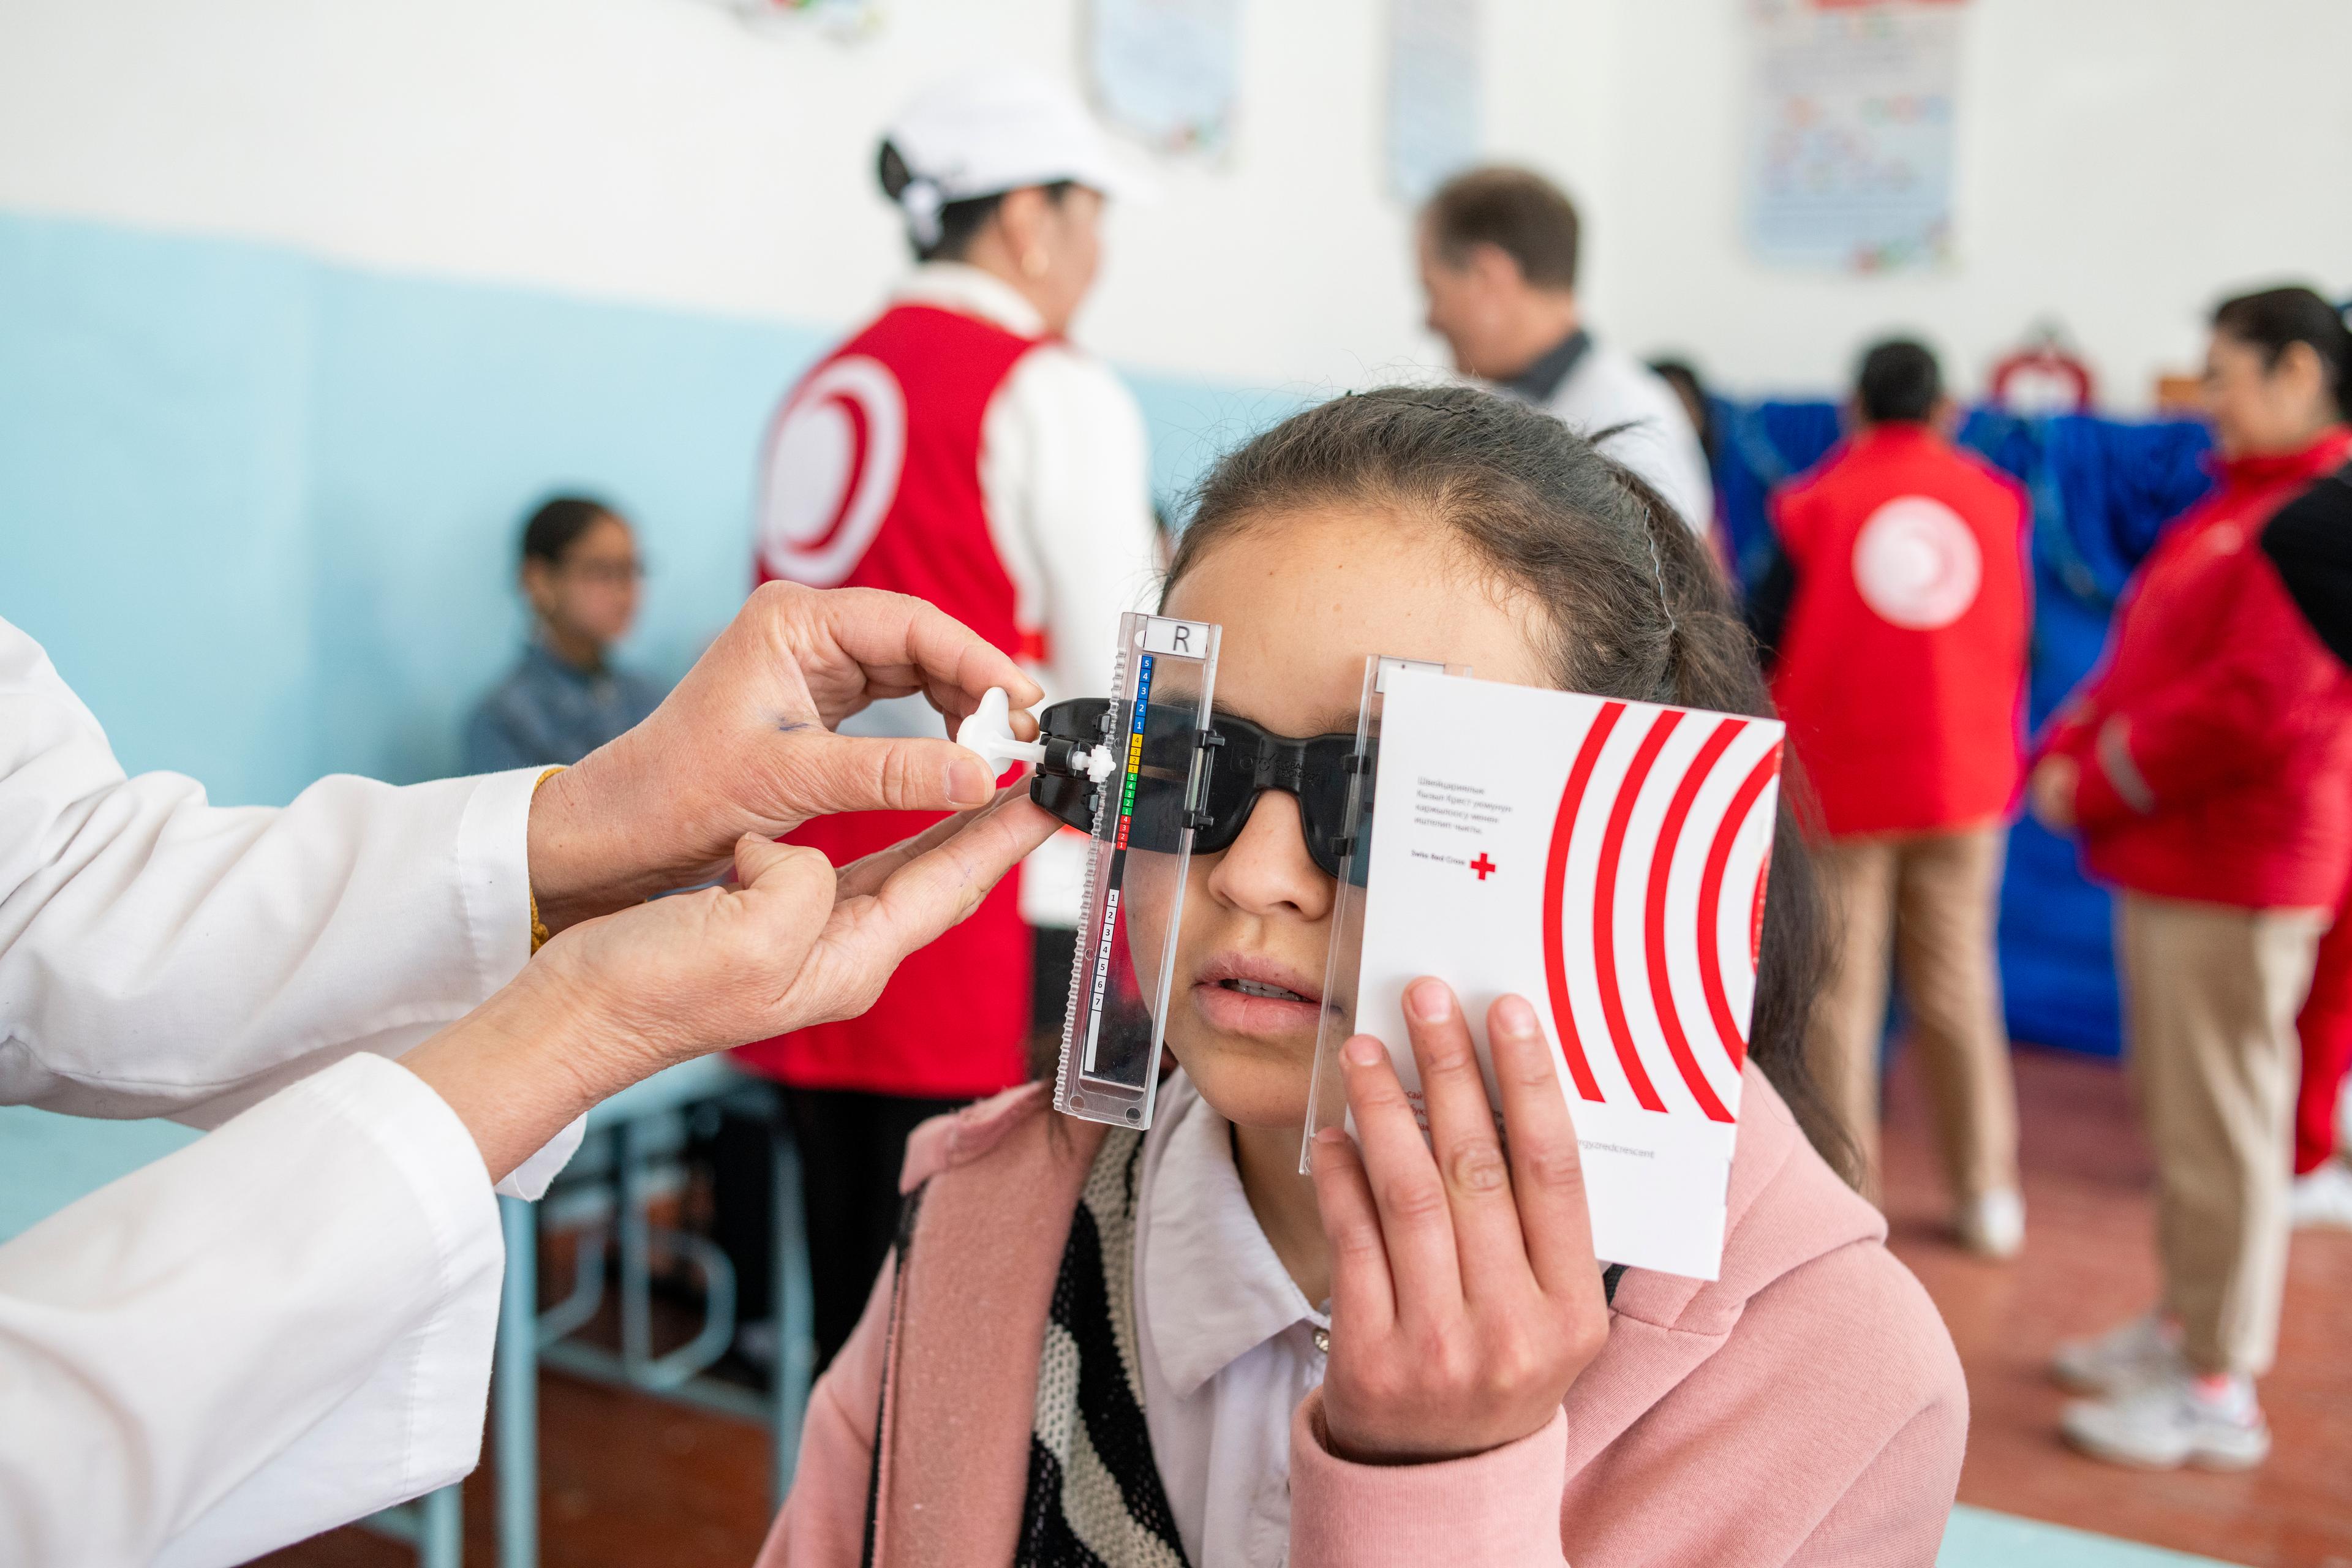 Uno studente sottoposto a un esame della vista durante uno screening scolastico nel villaggio di Chiy-Talaa in Kirghizistan.

